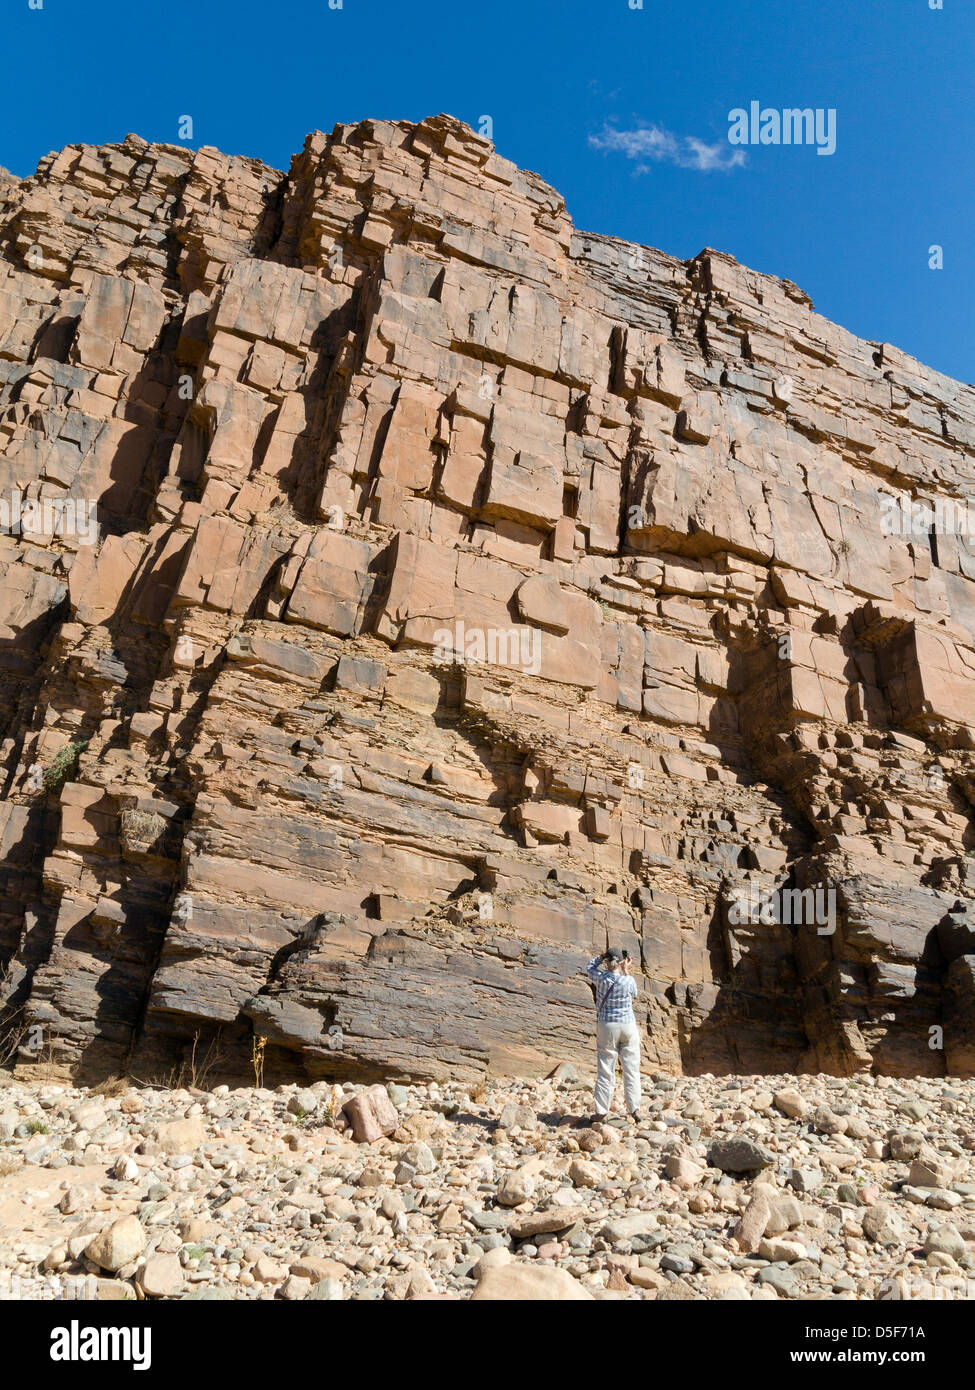 Wadi vicino al villaggio di Ait Ouabelli dove vi è una roccia preistorica art site, sulla strada tra Akka e Icht in Marocco Foto Stock